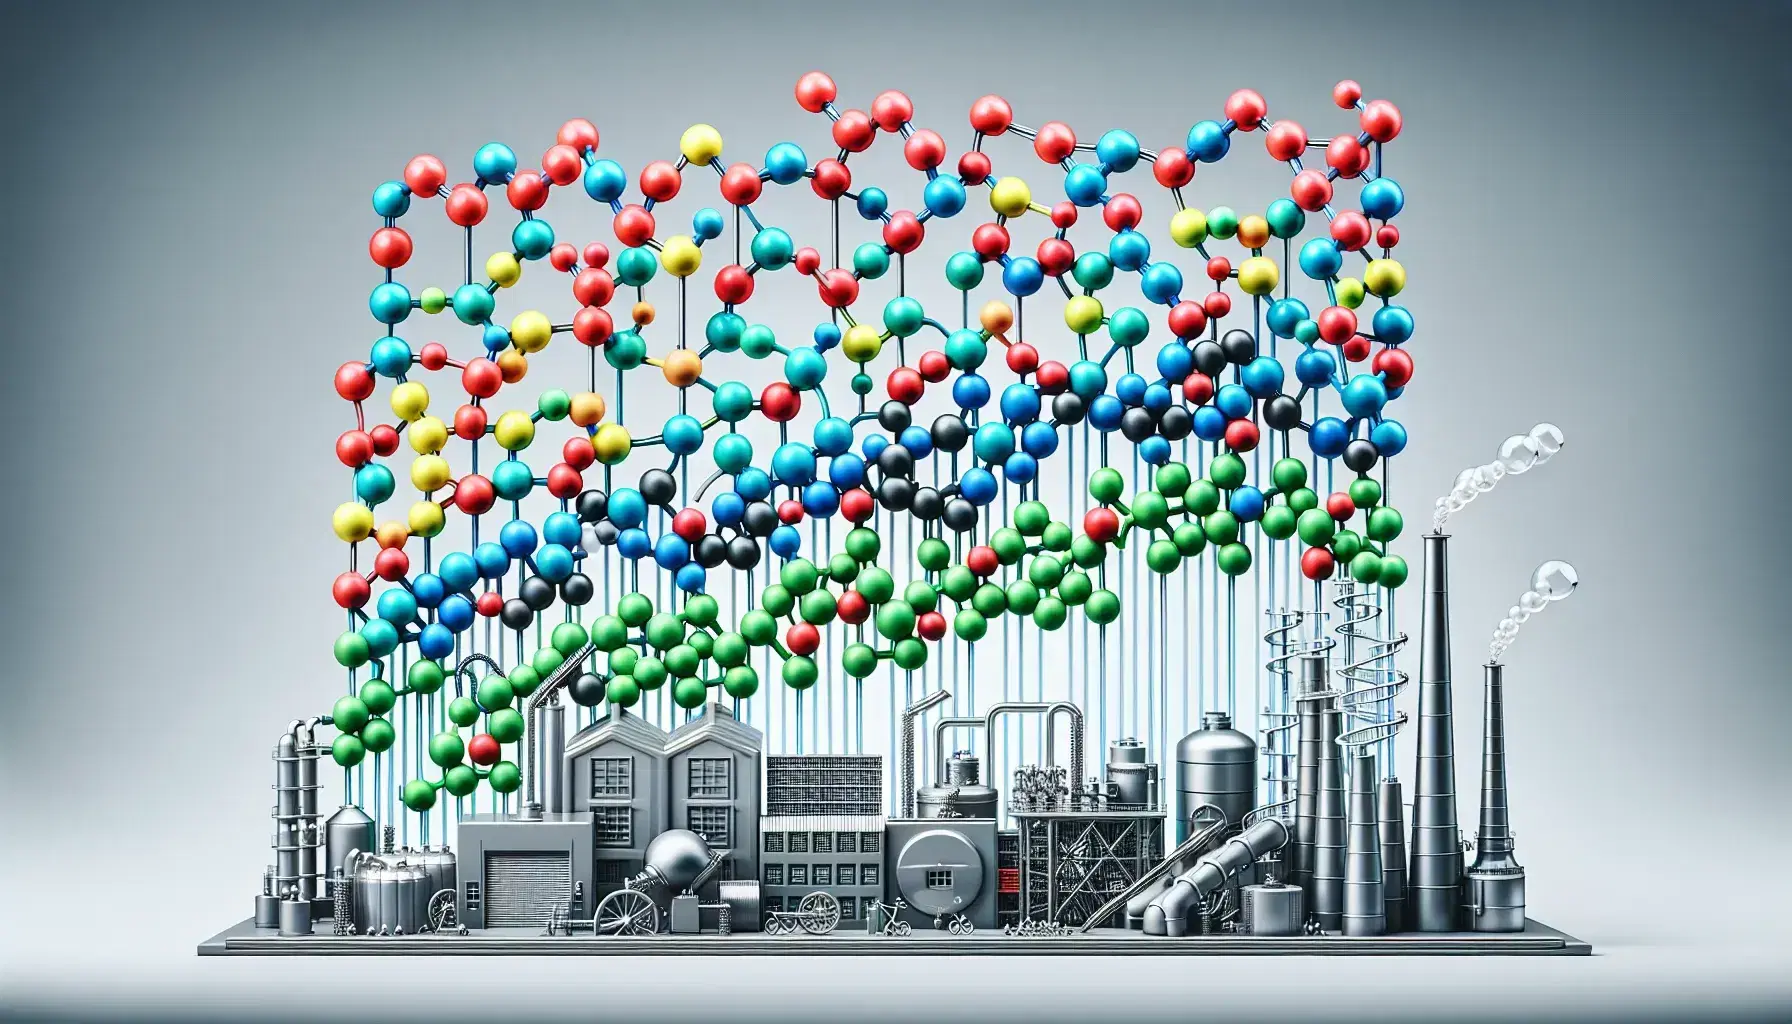 Perline colorate connesse da aste trasparenti rappresentano monomeri e polimeri davanti a una fabbrica stilizzata con macchinari industriali.